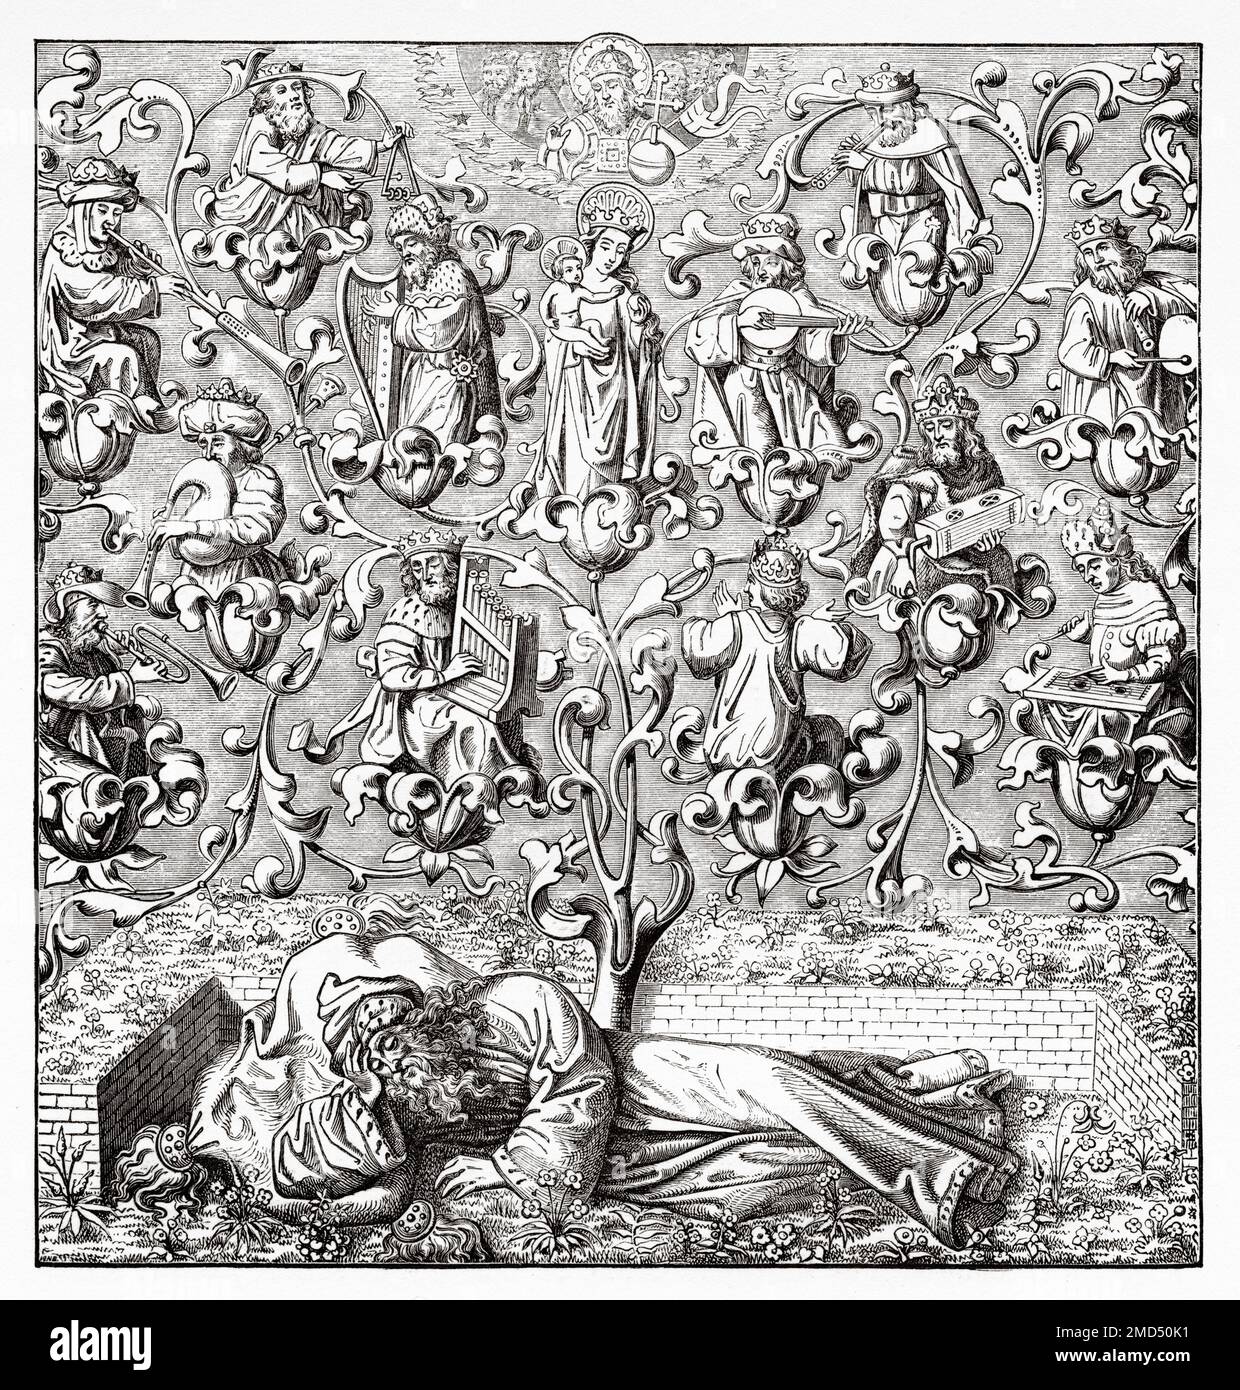 Der Baum von Jesse ist eine Kunstdarstellung der Vorfahren Jesu Christi, die in einem verzweigten Baum gezeigt wird, der aus Jesse von Bethlehem, dem Vater von König David, hervorgeht. Dies ist die ursprüngliche Verwendung des Familienbaums als schematische Darstellung einer Genealogie. Die Kunst des Mittelalters und zur Zeit der Renaissance von Paul Lacroix, 1874 Stockfoto